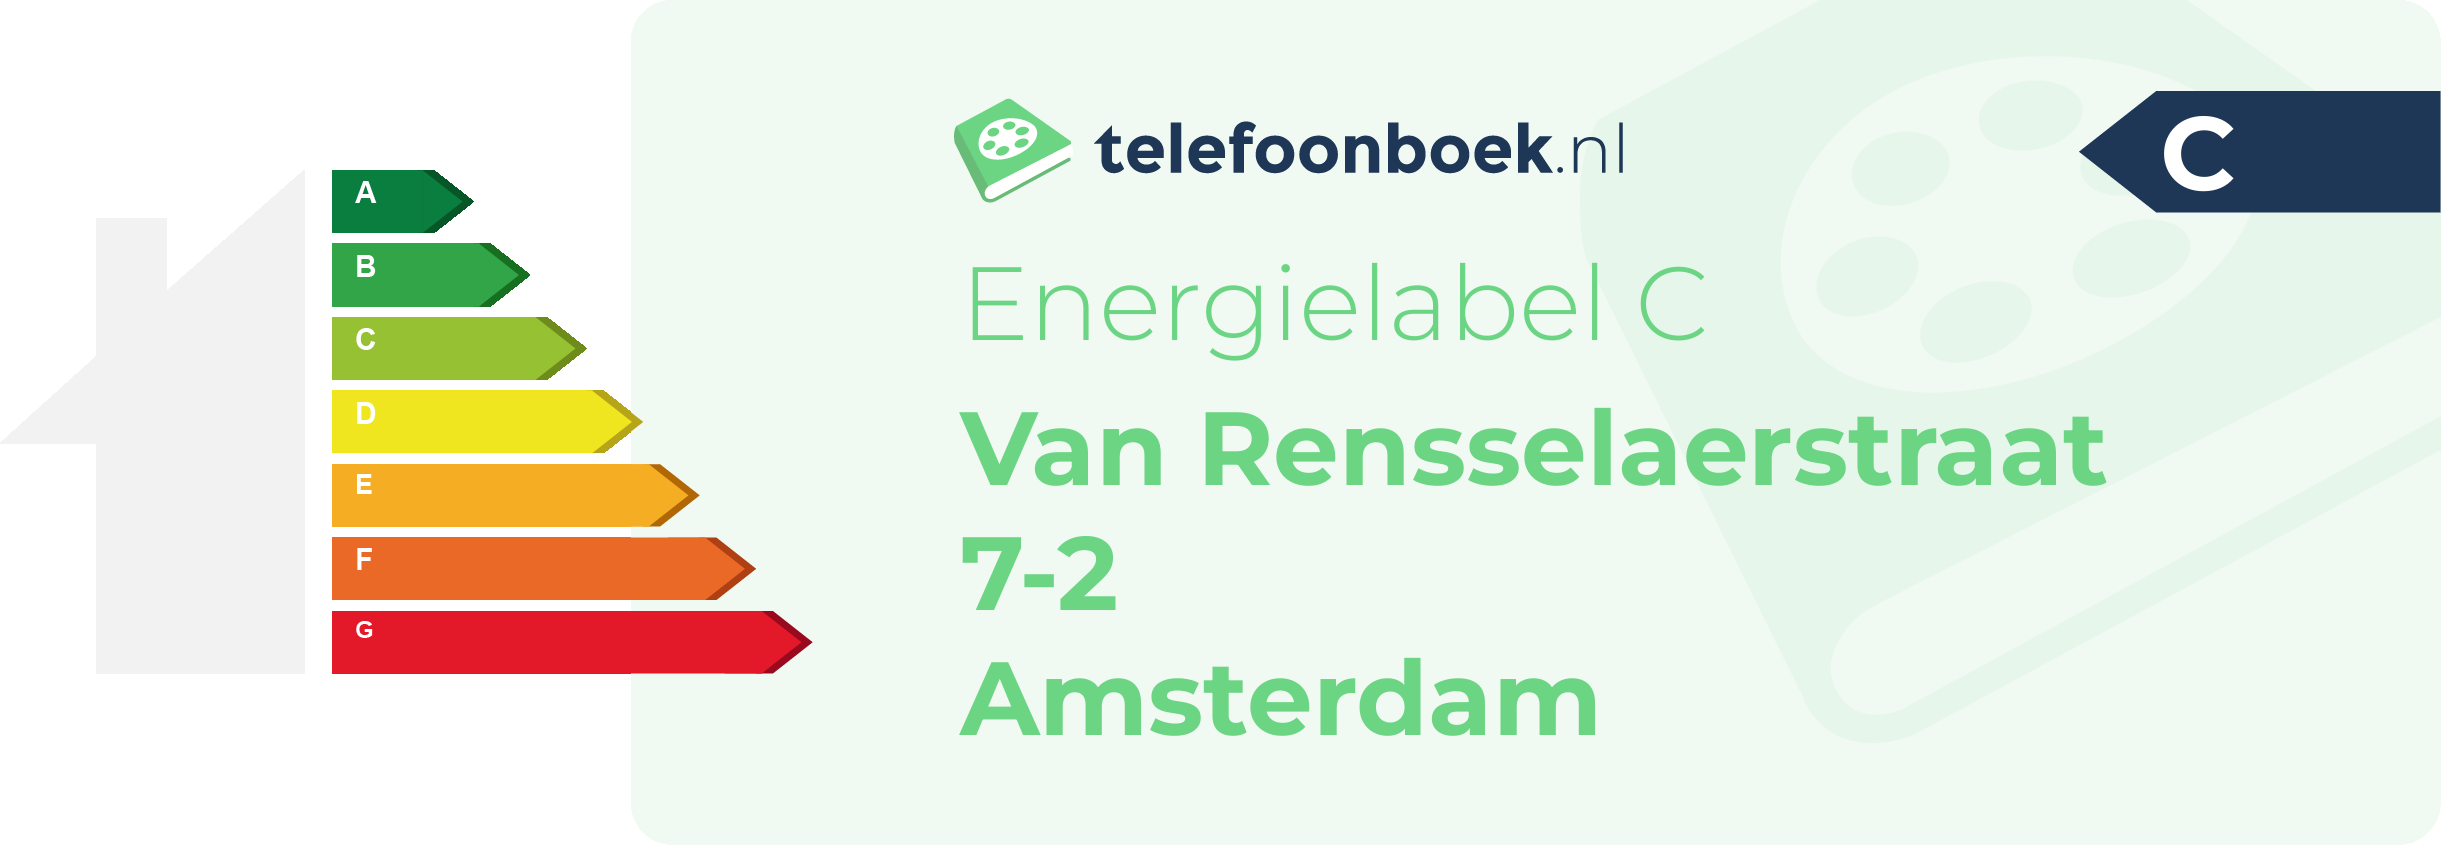 Energielabel Van Rensselaerstraat 7-2 Amsterdam